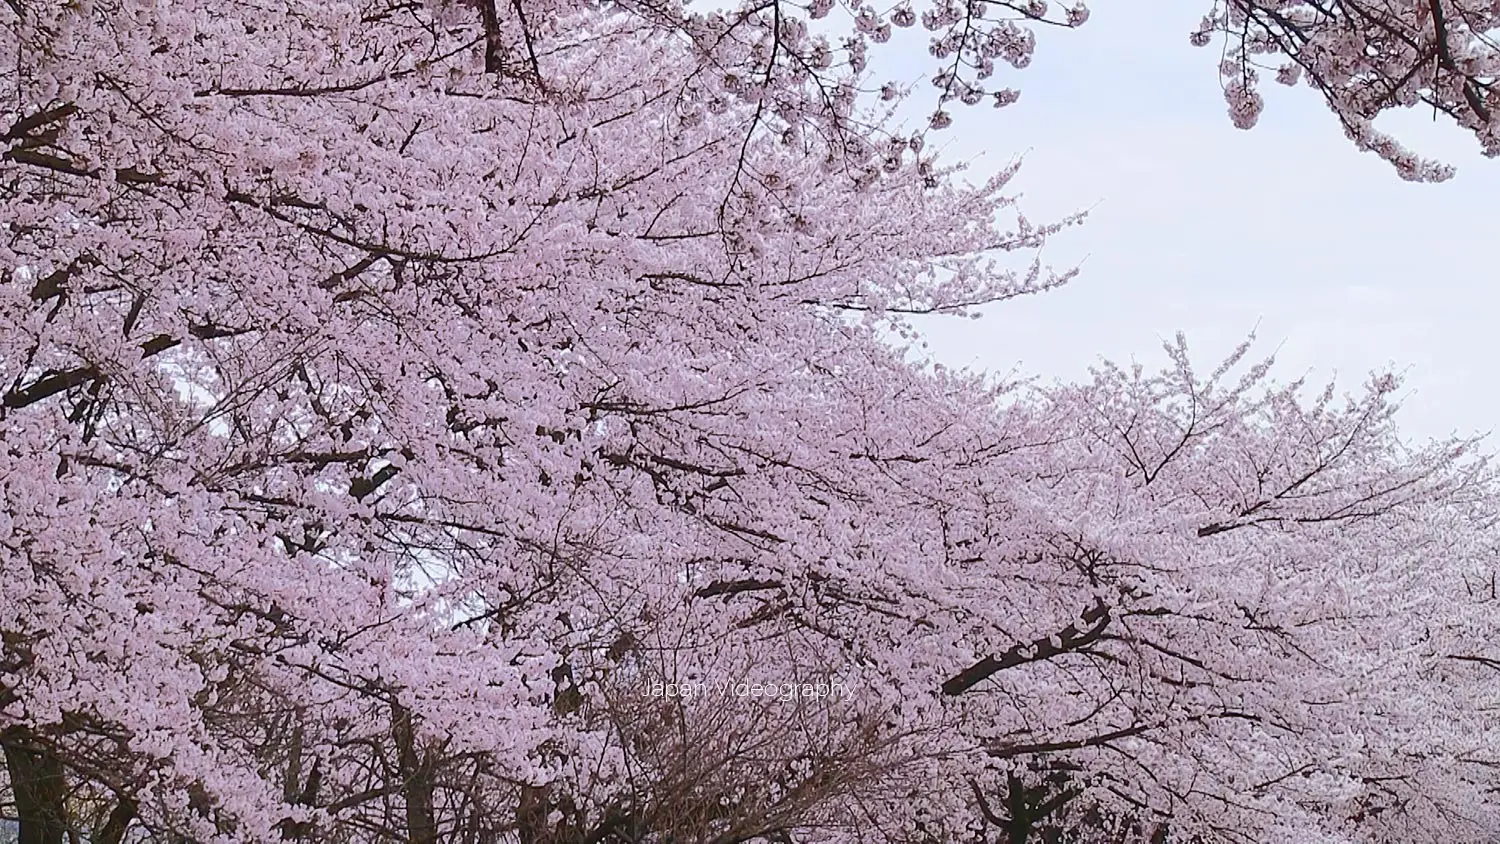 山形県山形市のお花見スポット 山形城跡 霞城公園の桜